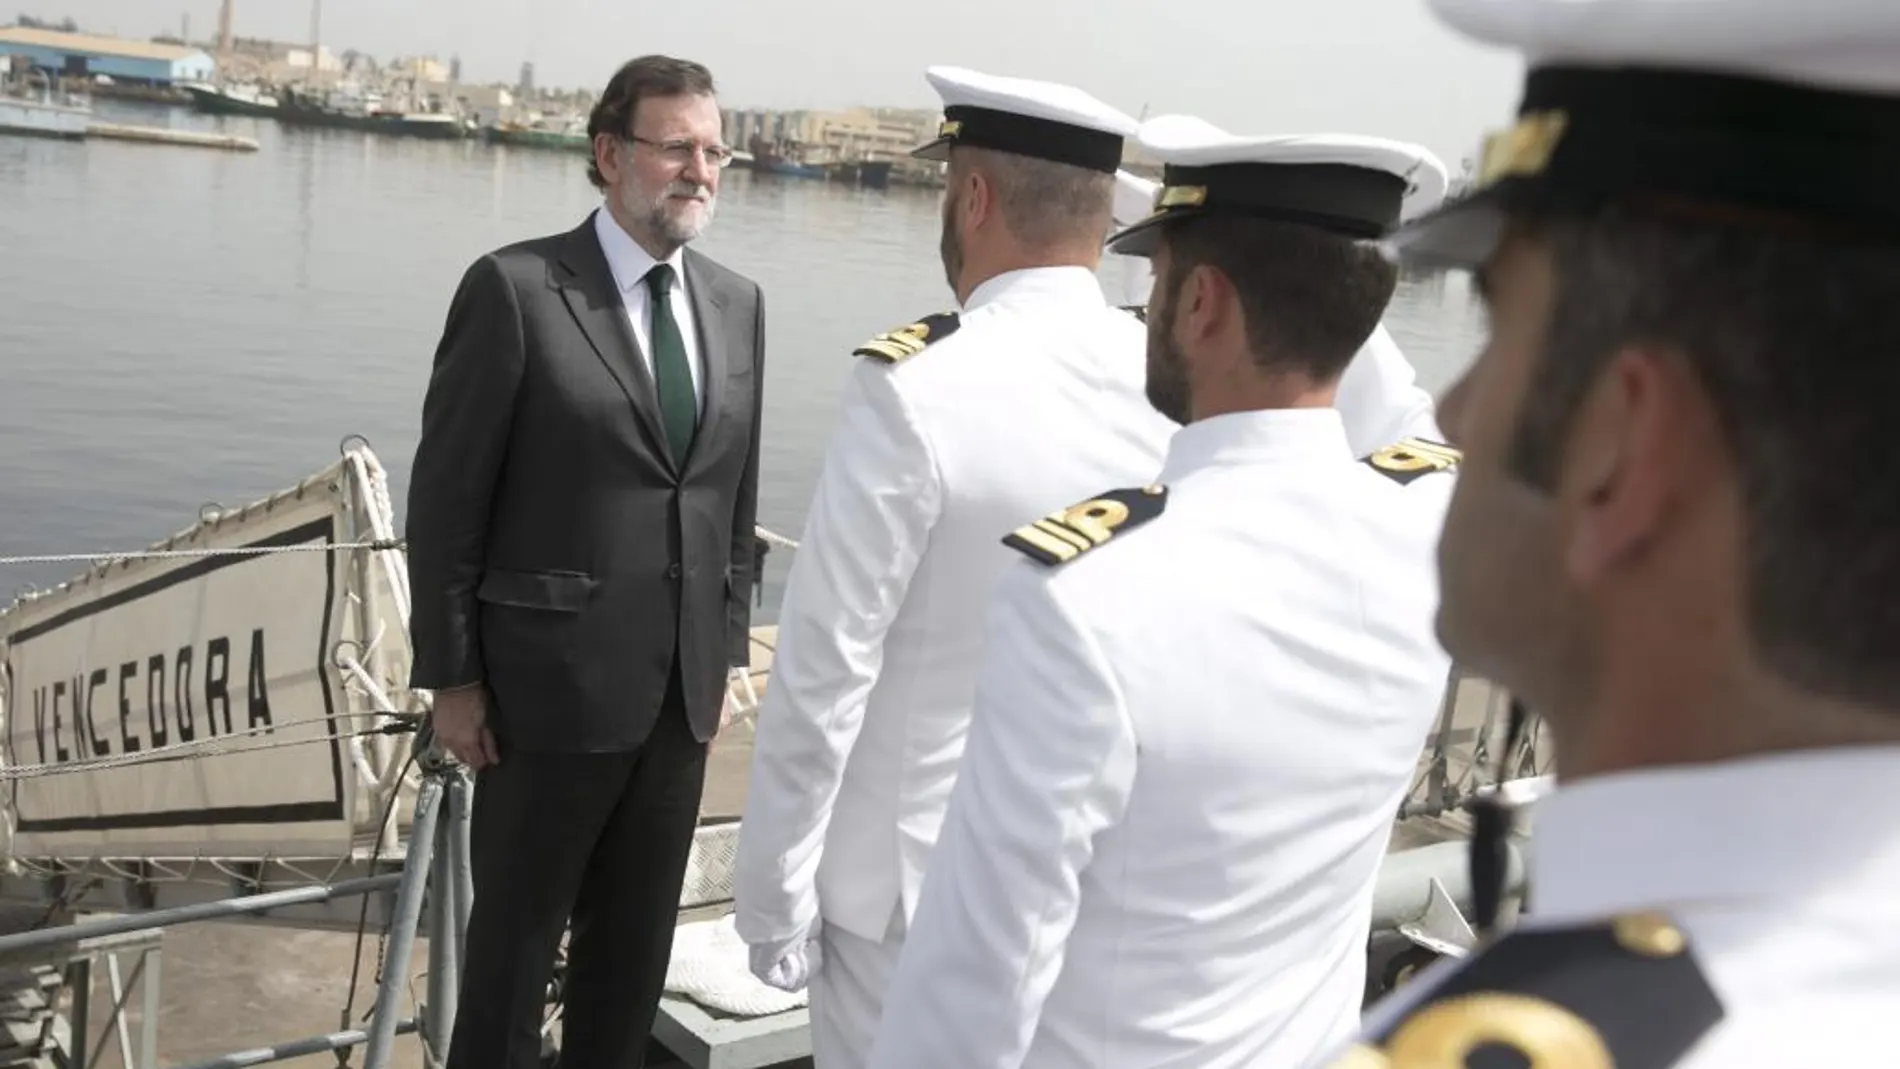 El presidente del Gobierno, Mariano Rajoy, que se encuentra de viaje oficial a la República de Senegal, durante su visita al patrullero de la Armada "Vencedora", amarrado en la base naval de Dakar.